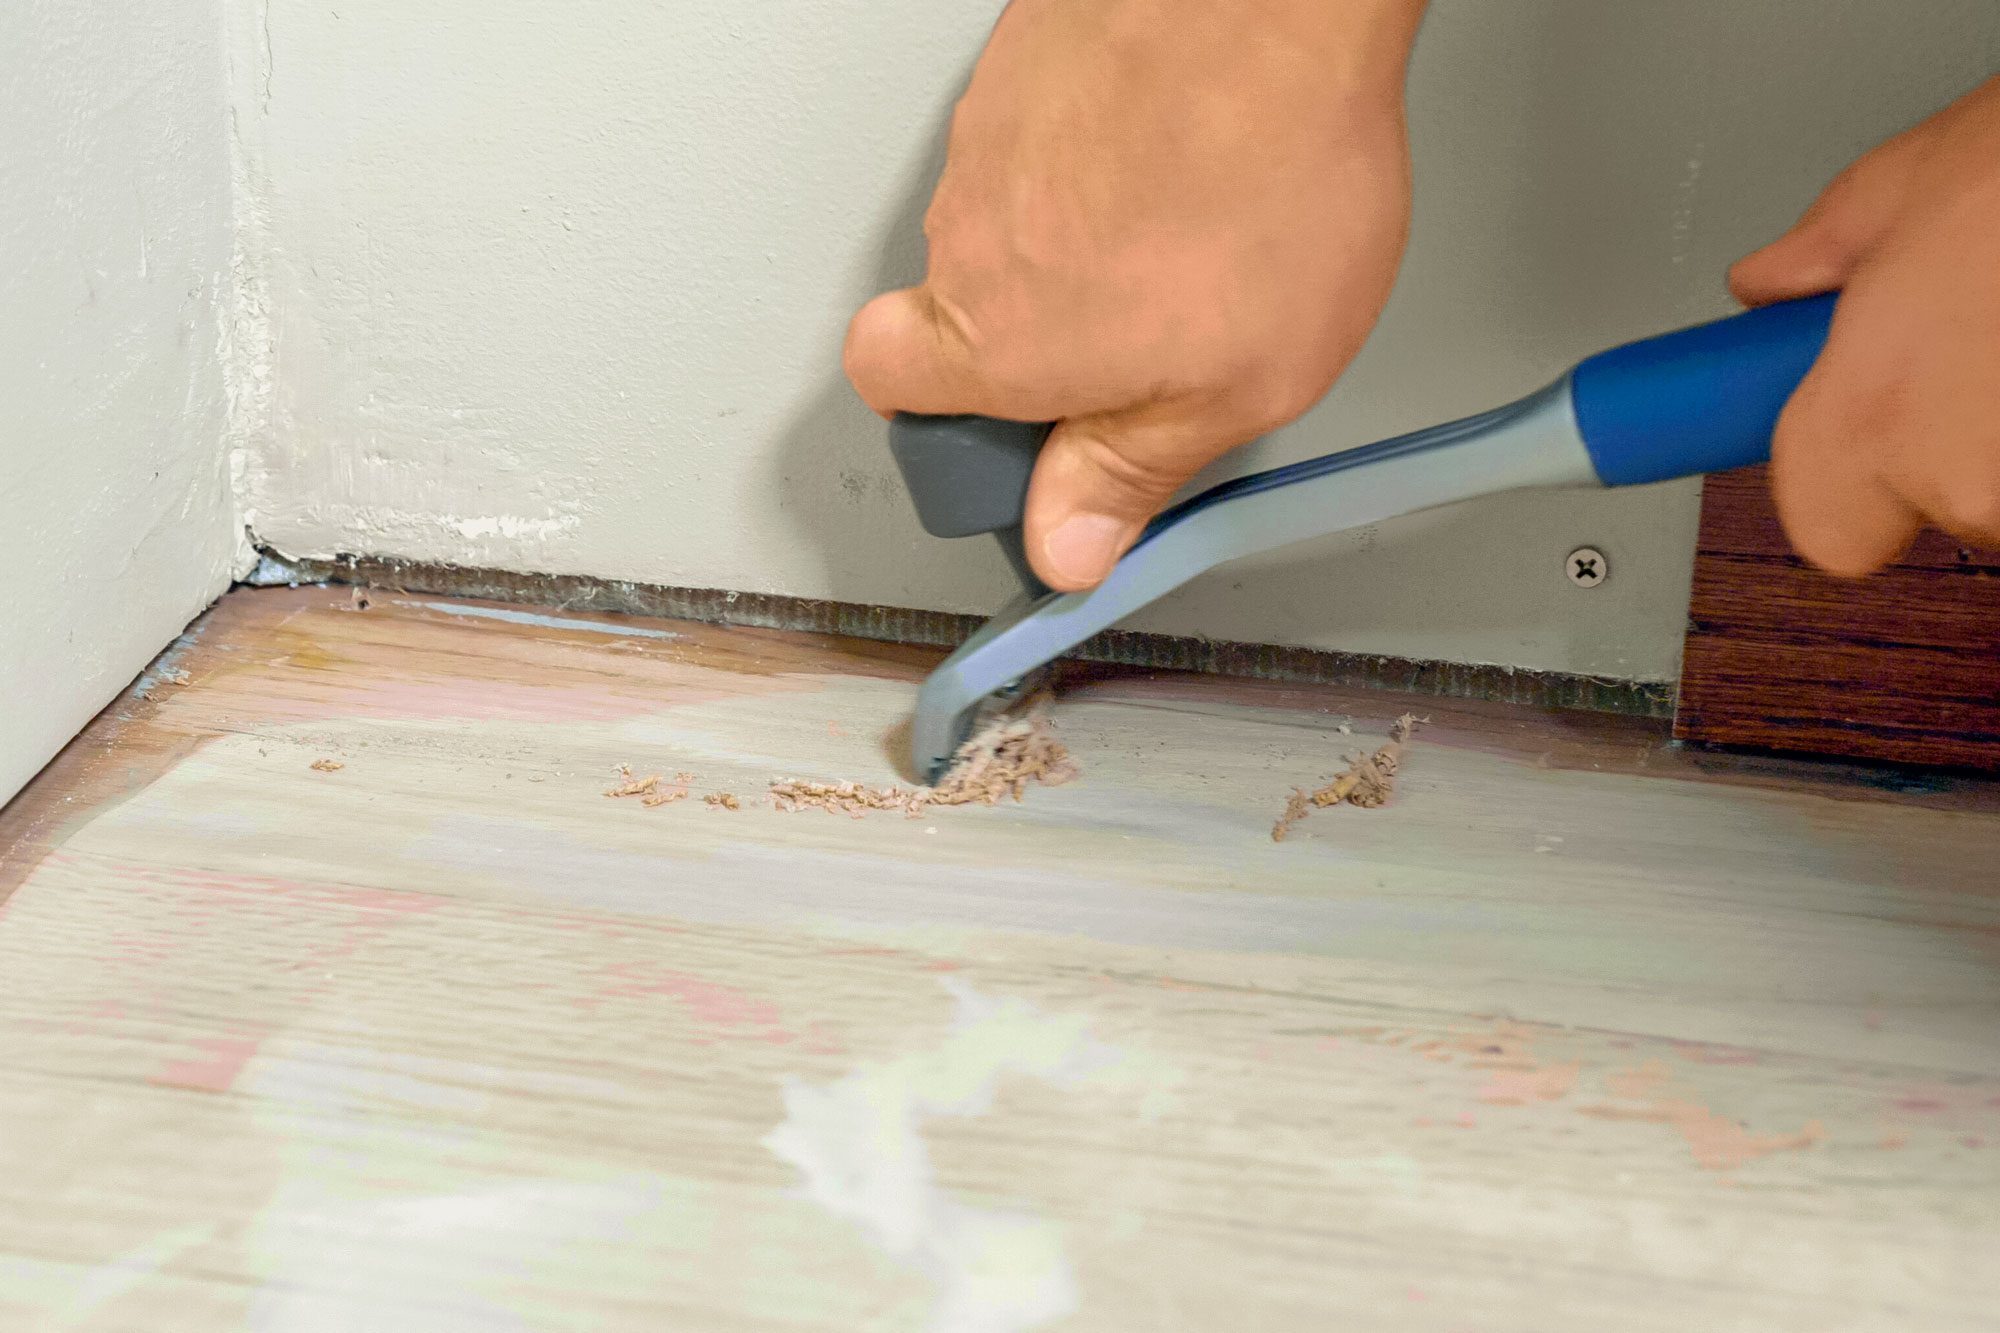 Scraping Corners of Wooden Floor with Carbide Paint Scraper